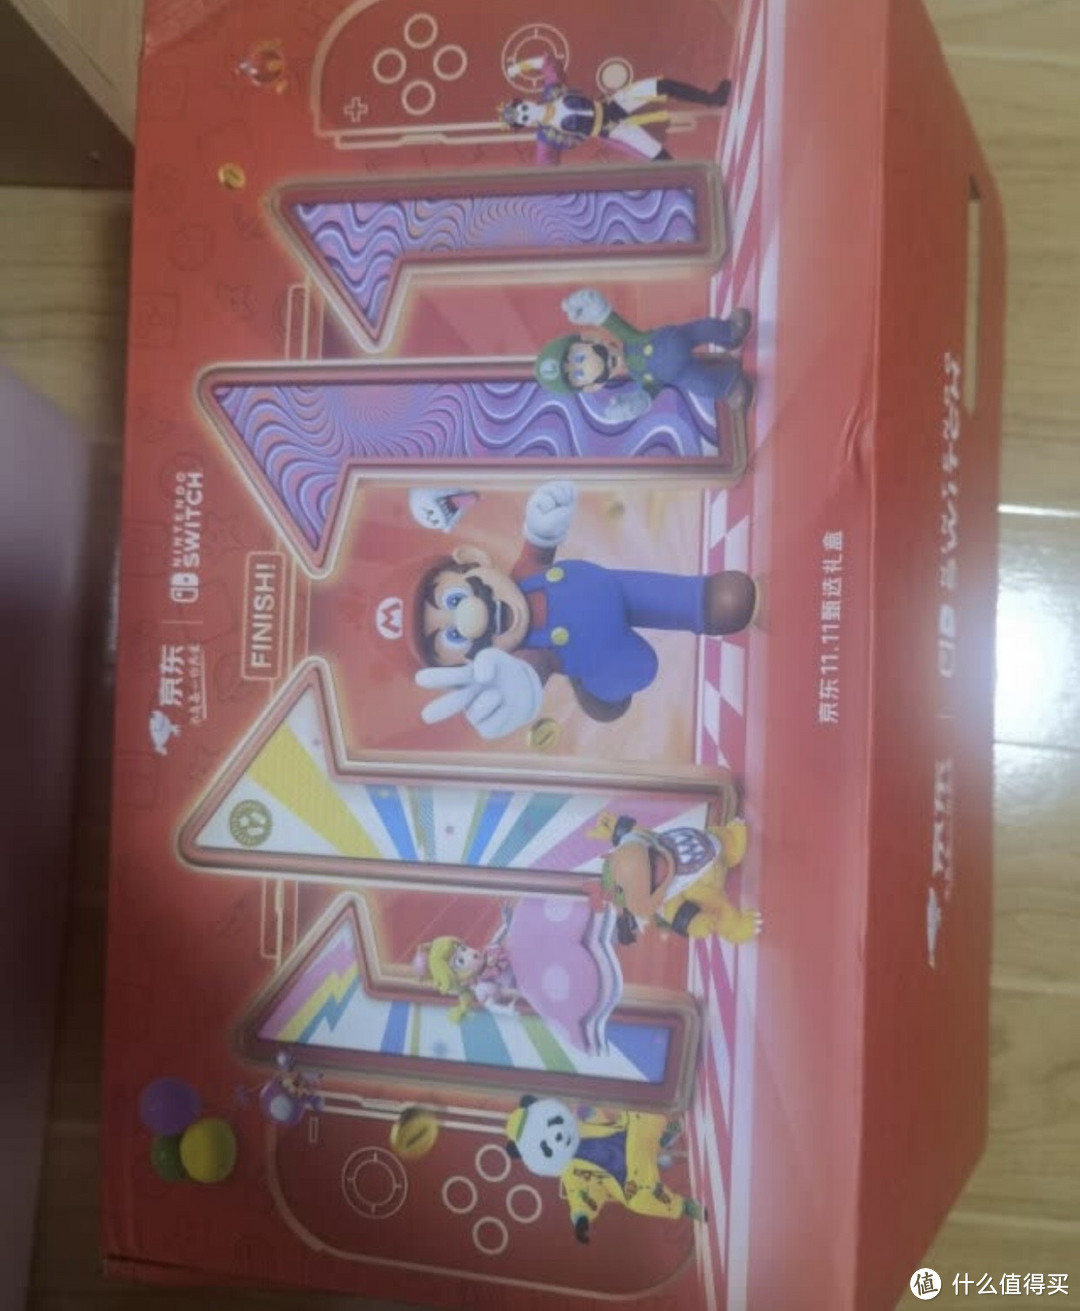 ￼￼任天堂 Nintendo Switch超级盒子 国行续航增强版红蓝主机【内含续航主机&随机款Amiibo1￼￼